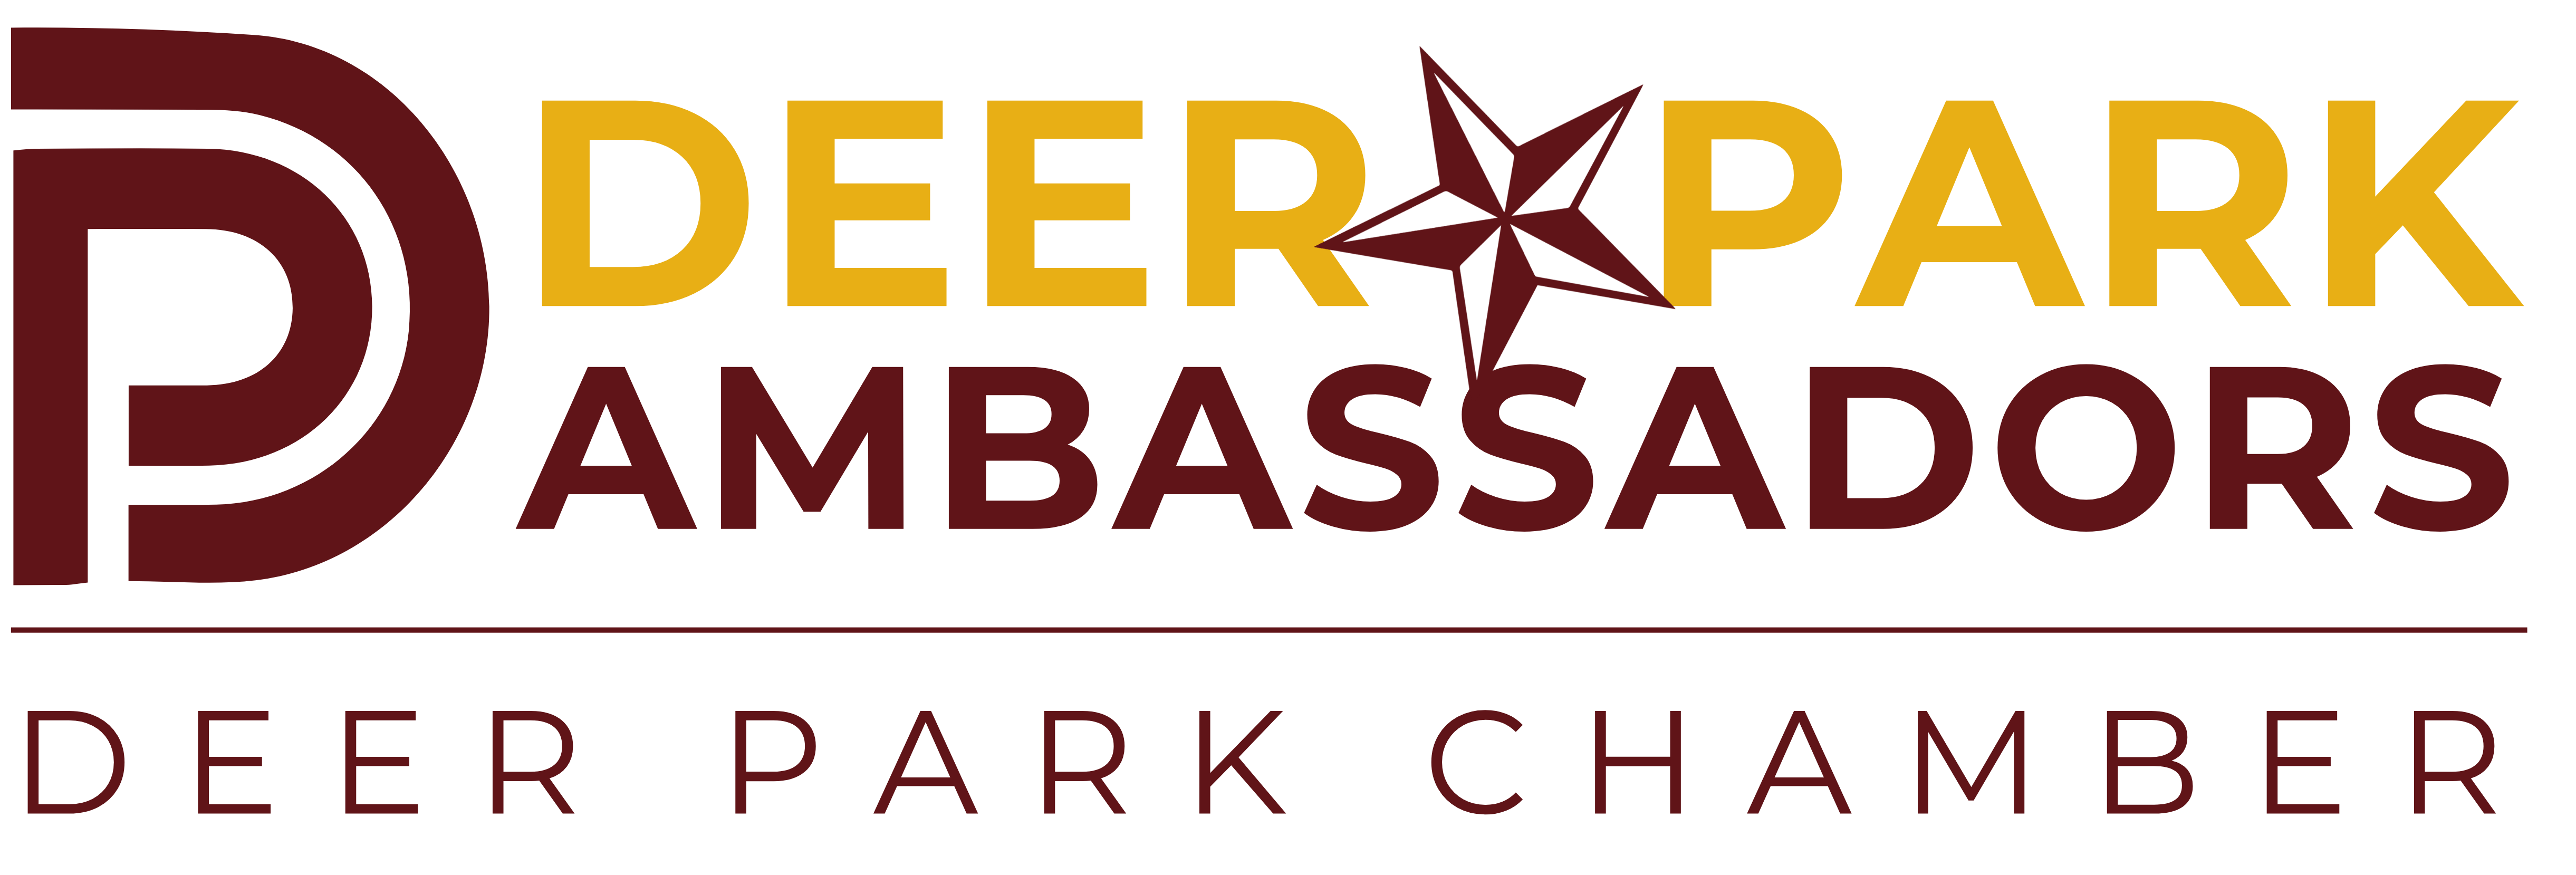 Deer Park Chamber Ambassadors